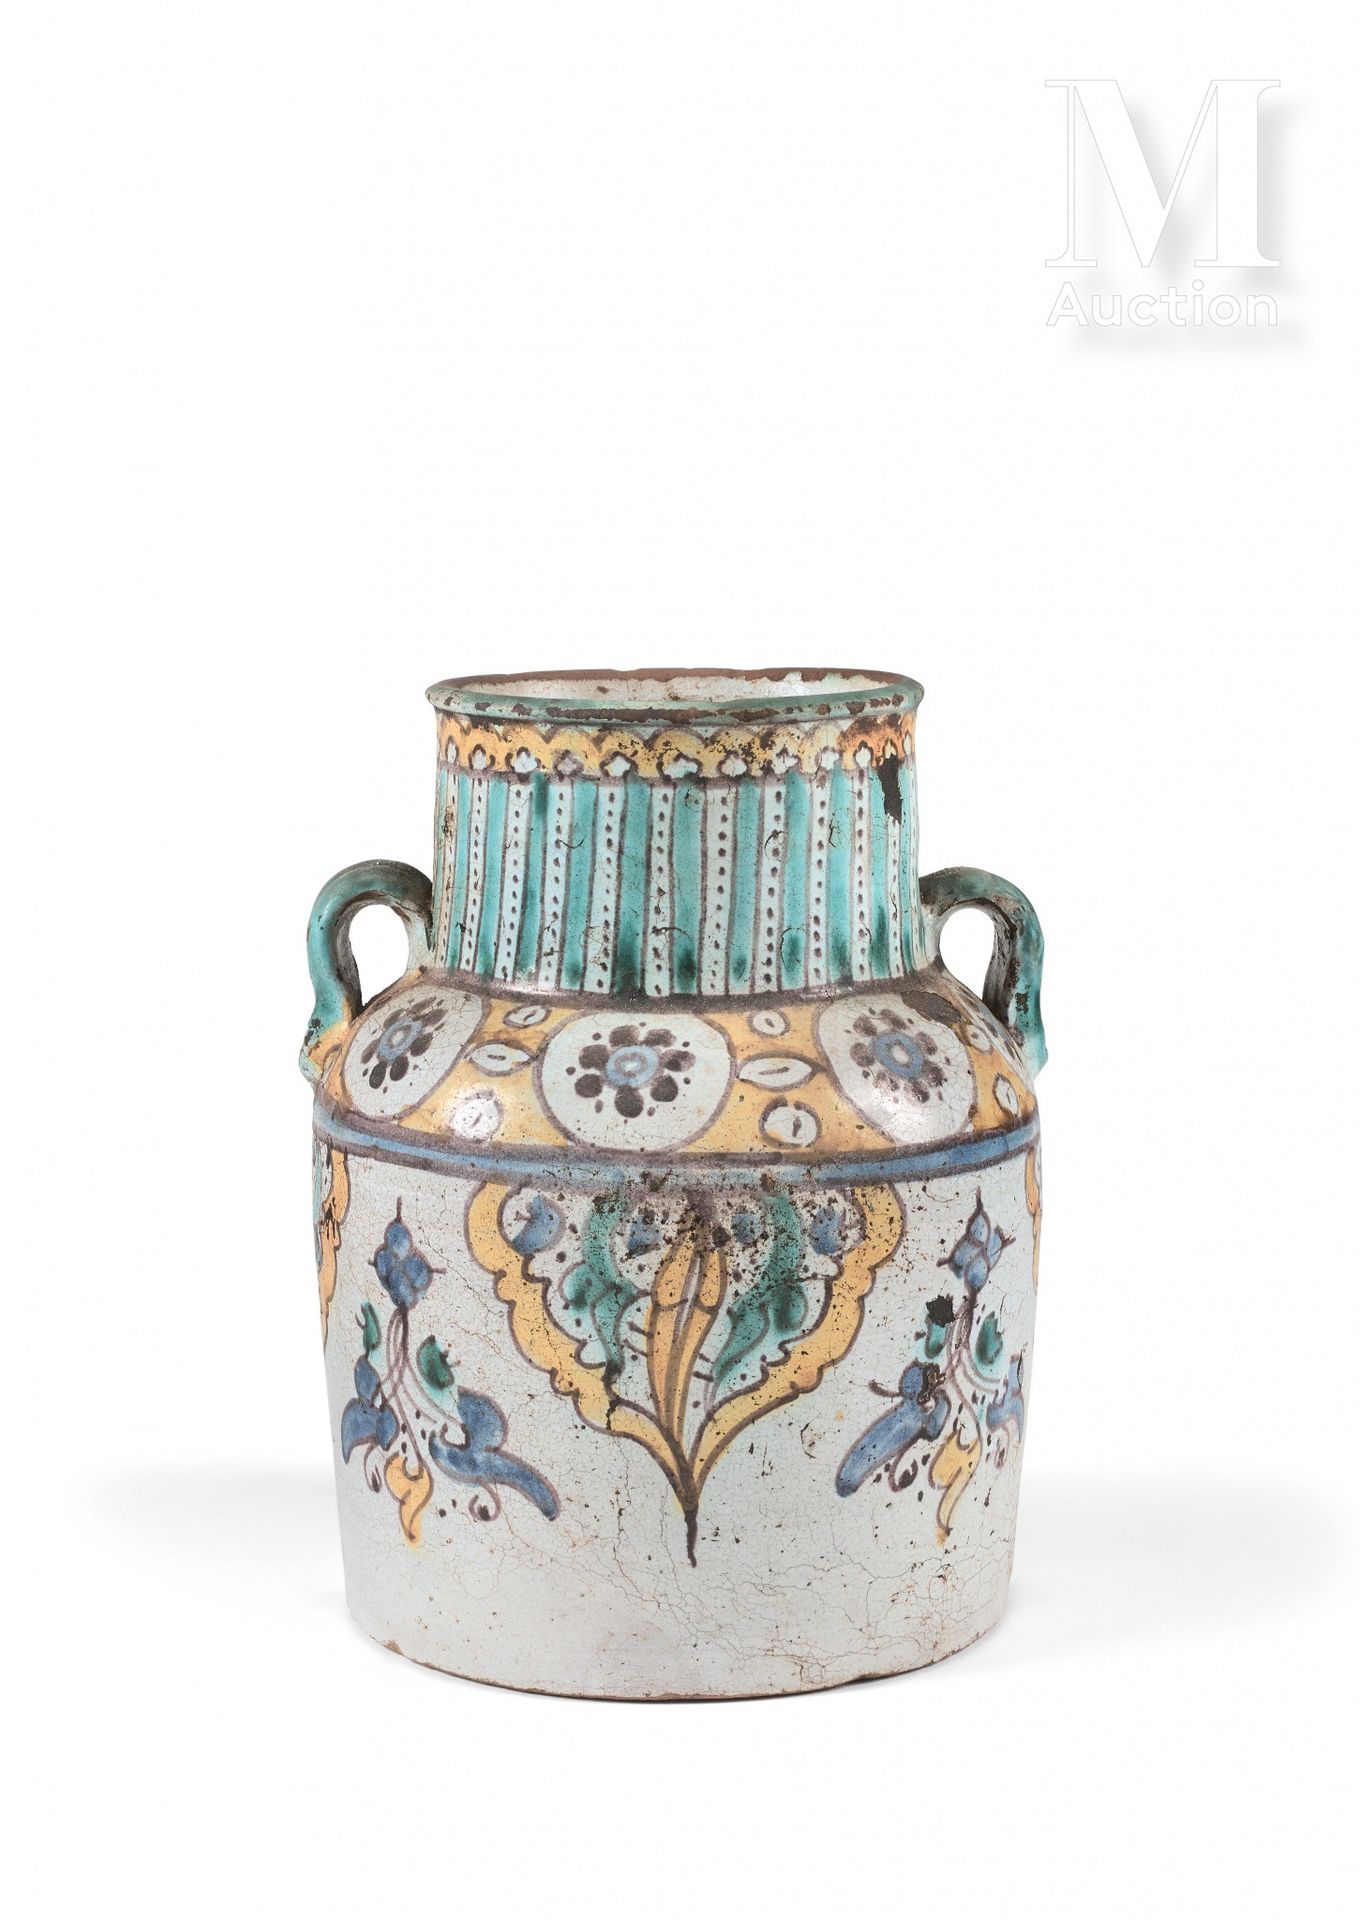 Qolla - Jarre à deux anses Maroc, Fès, XVIIIe siècle

En céramique polychrome pe&hellip;